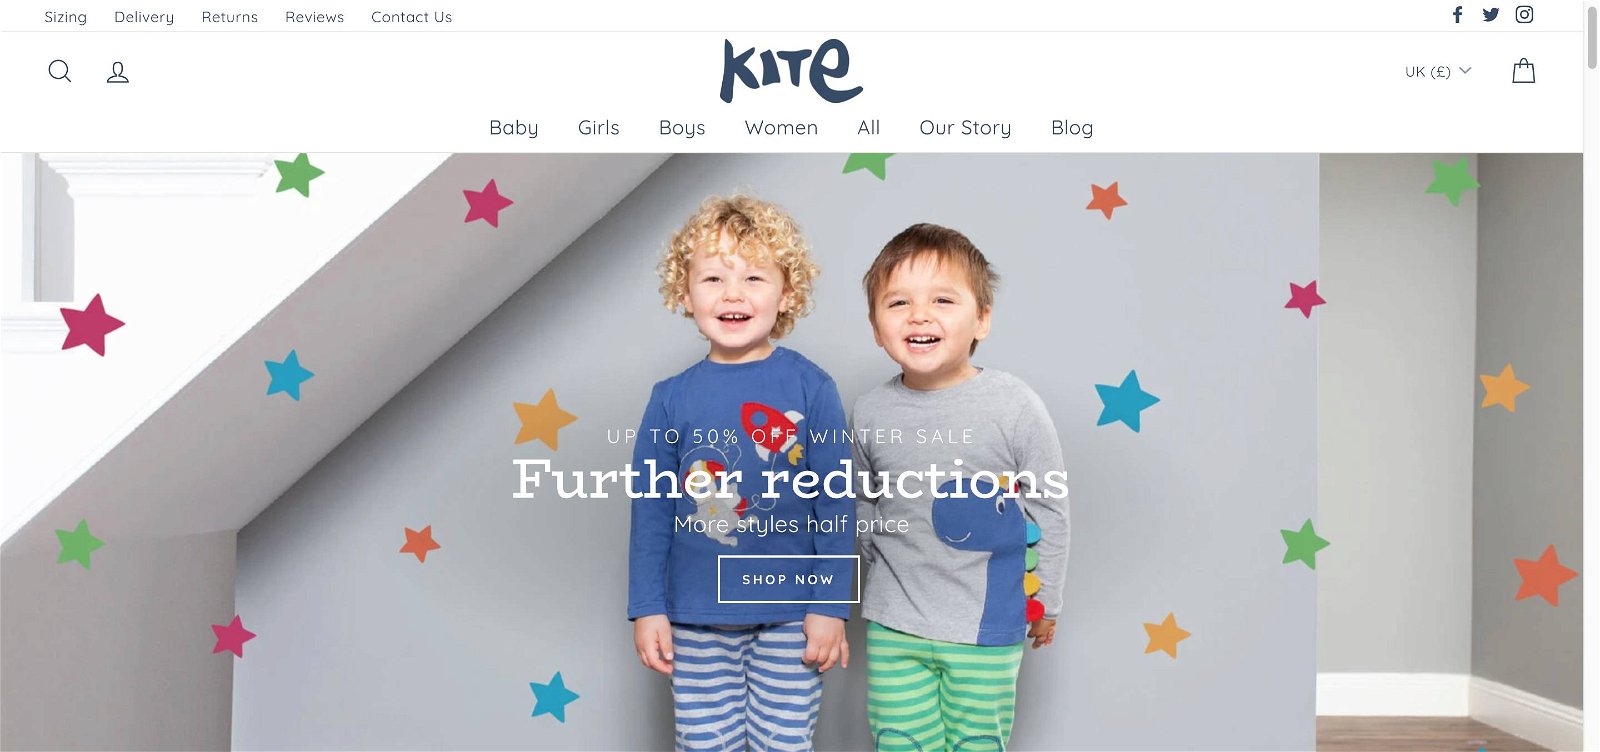 Kite-clothing.co.uk